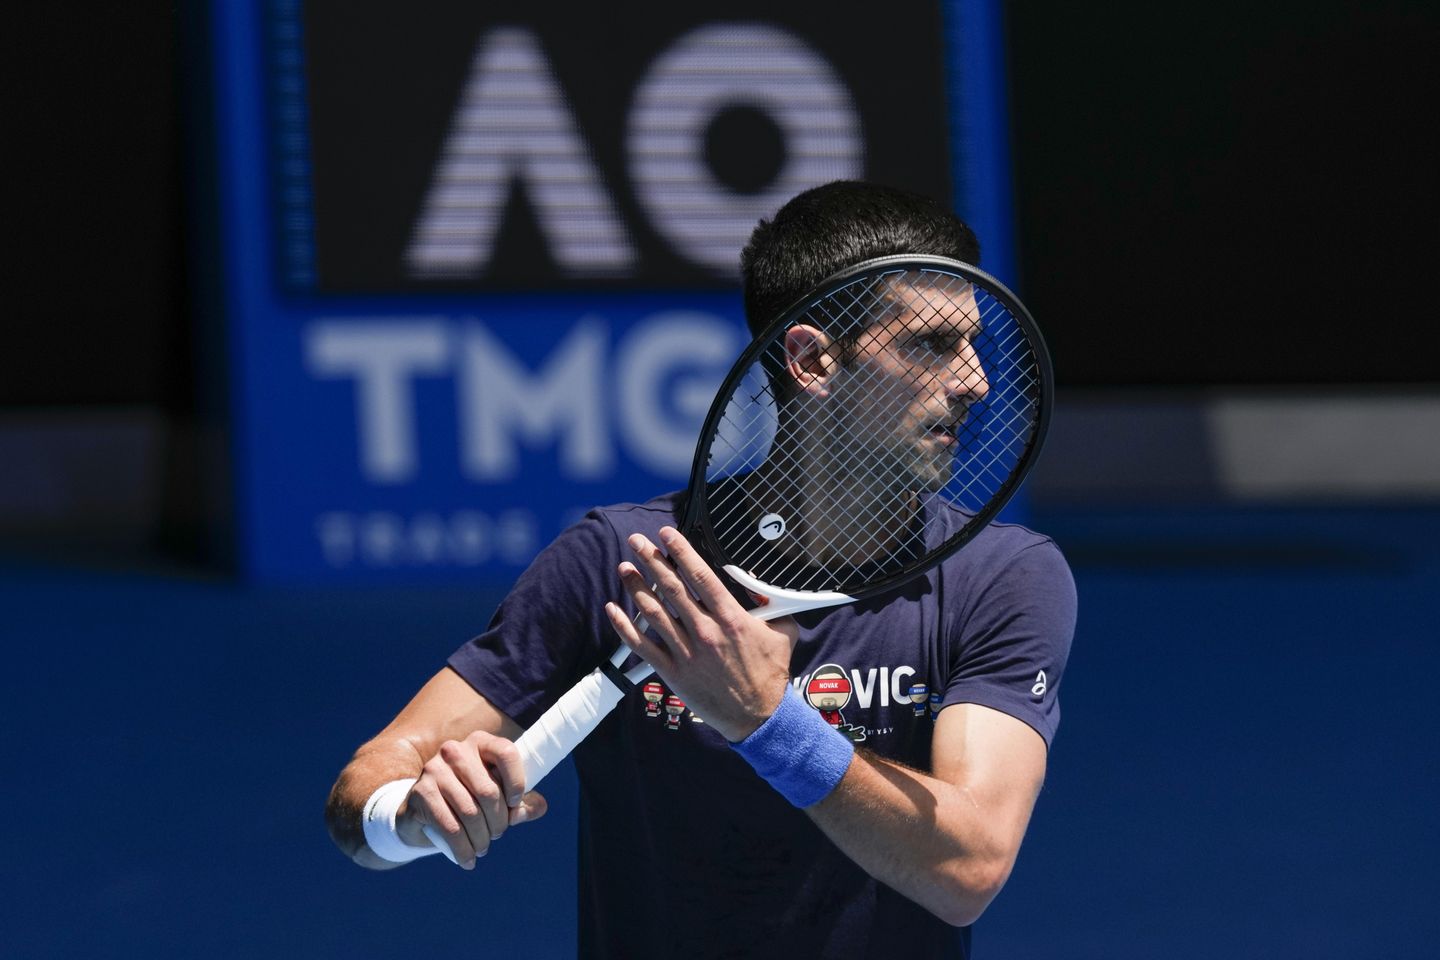 Descartado: Australia deporta a Djokovic por no estar vacunado